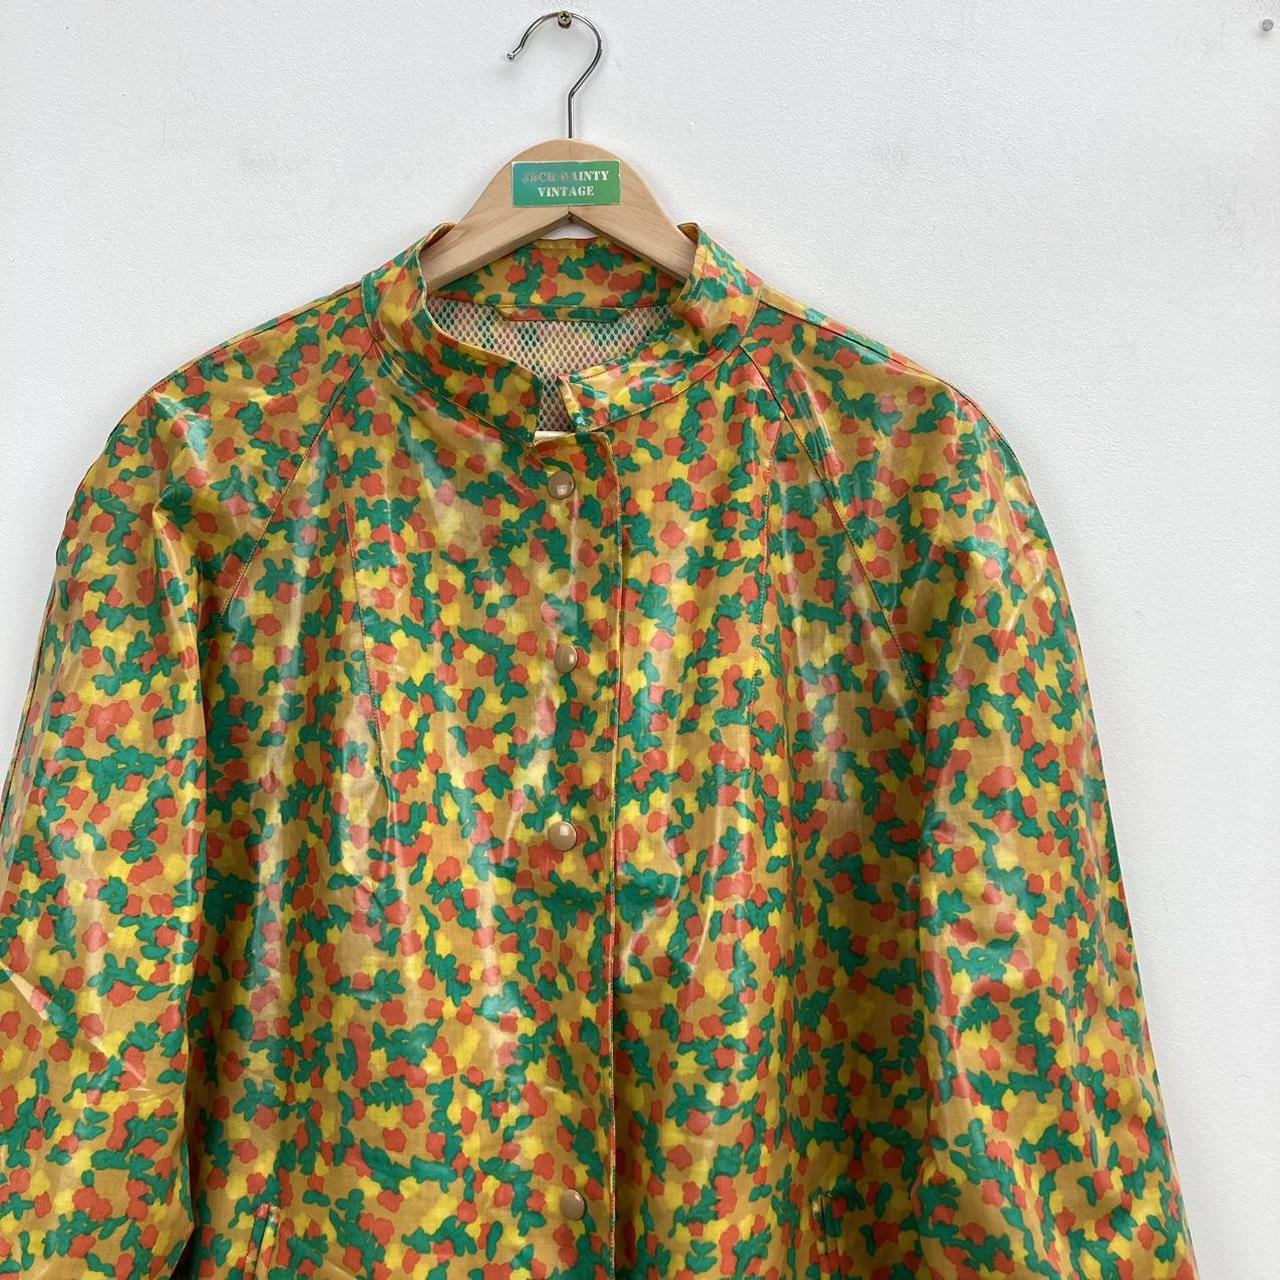 Vintage vinyl floral patterned rain coat No offers... - Depop